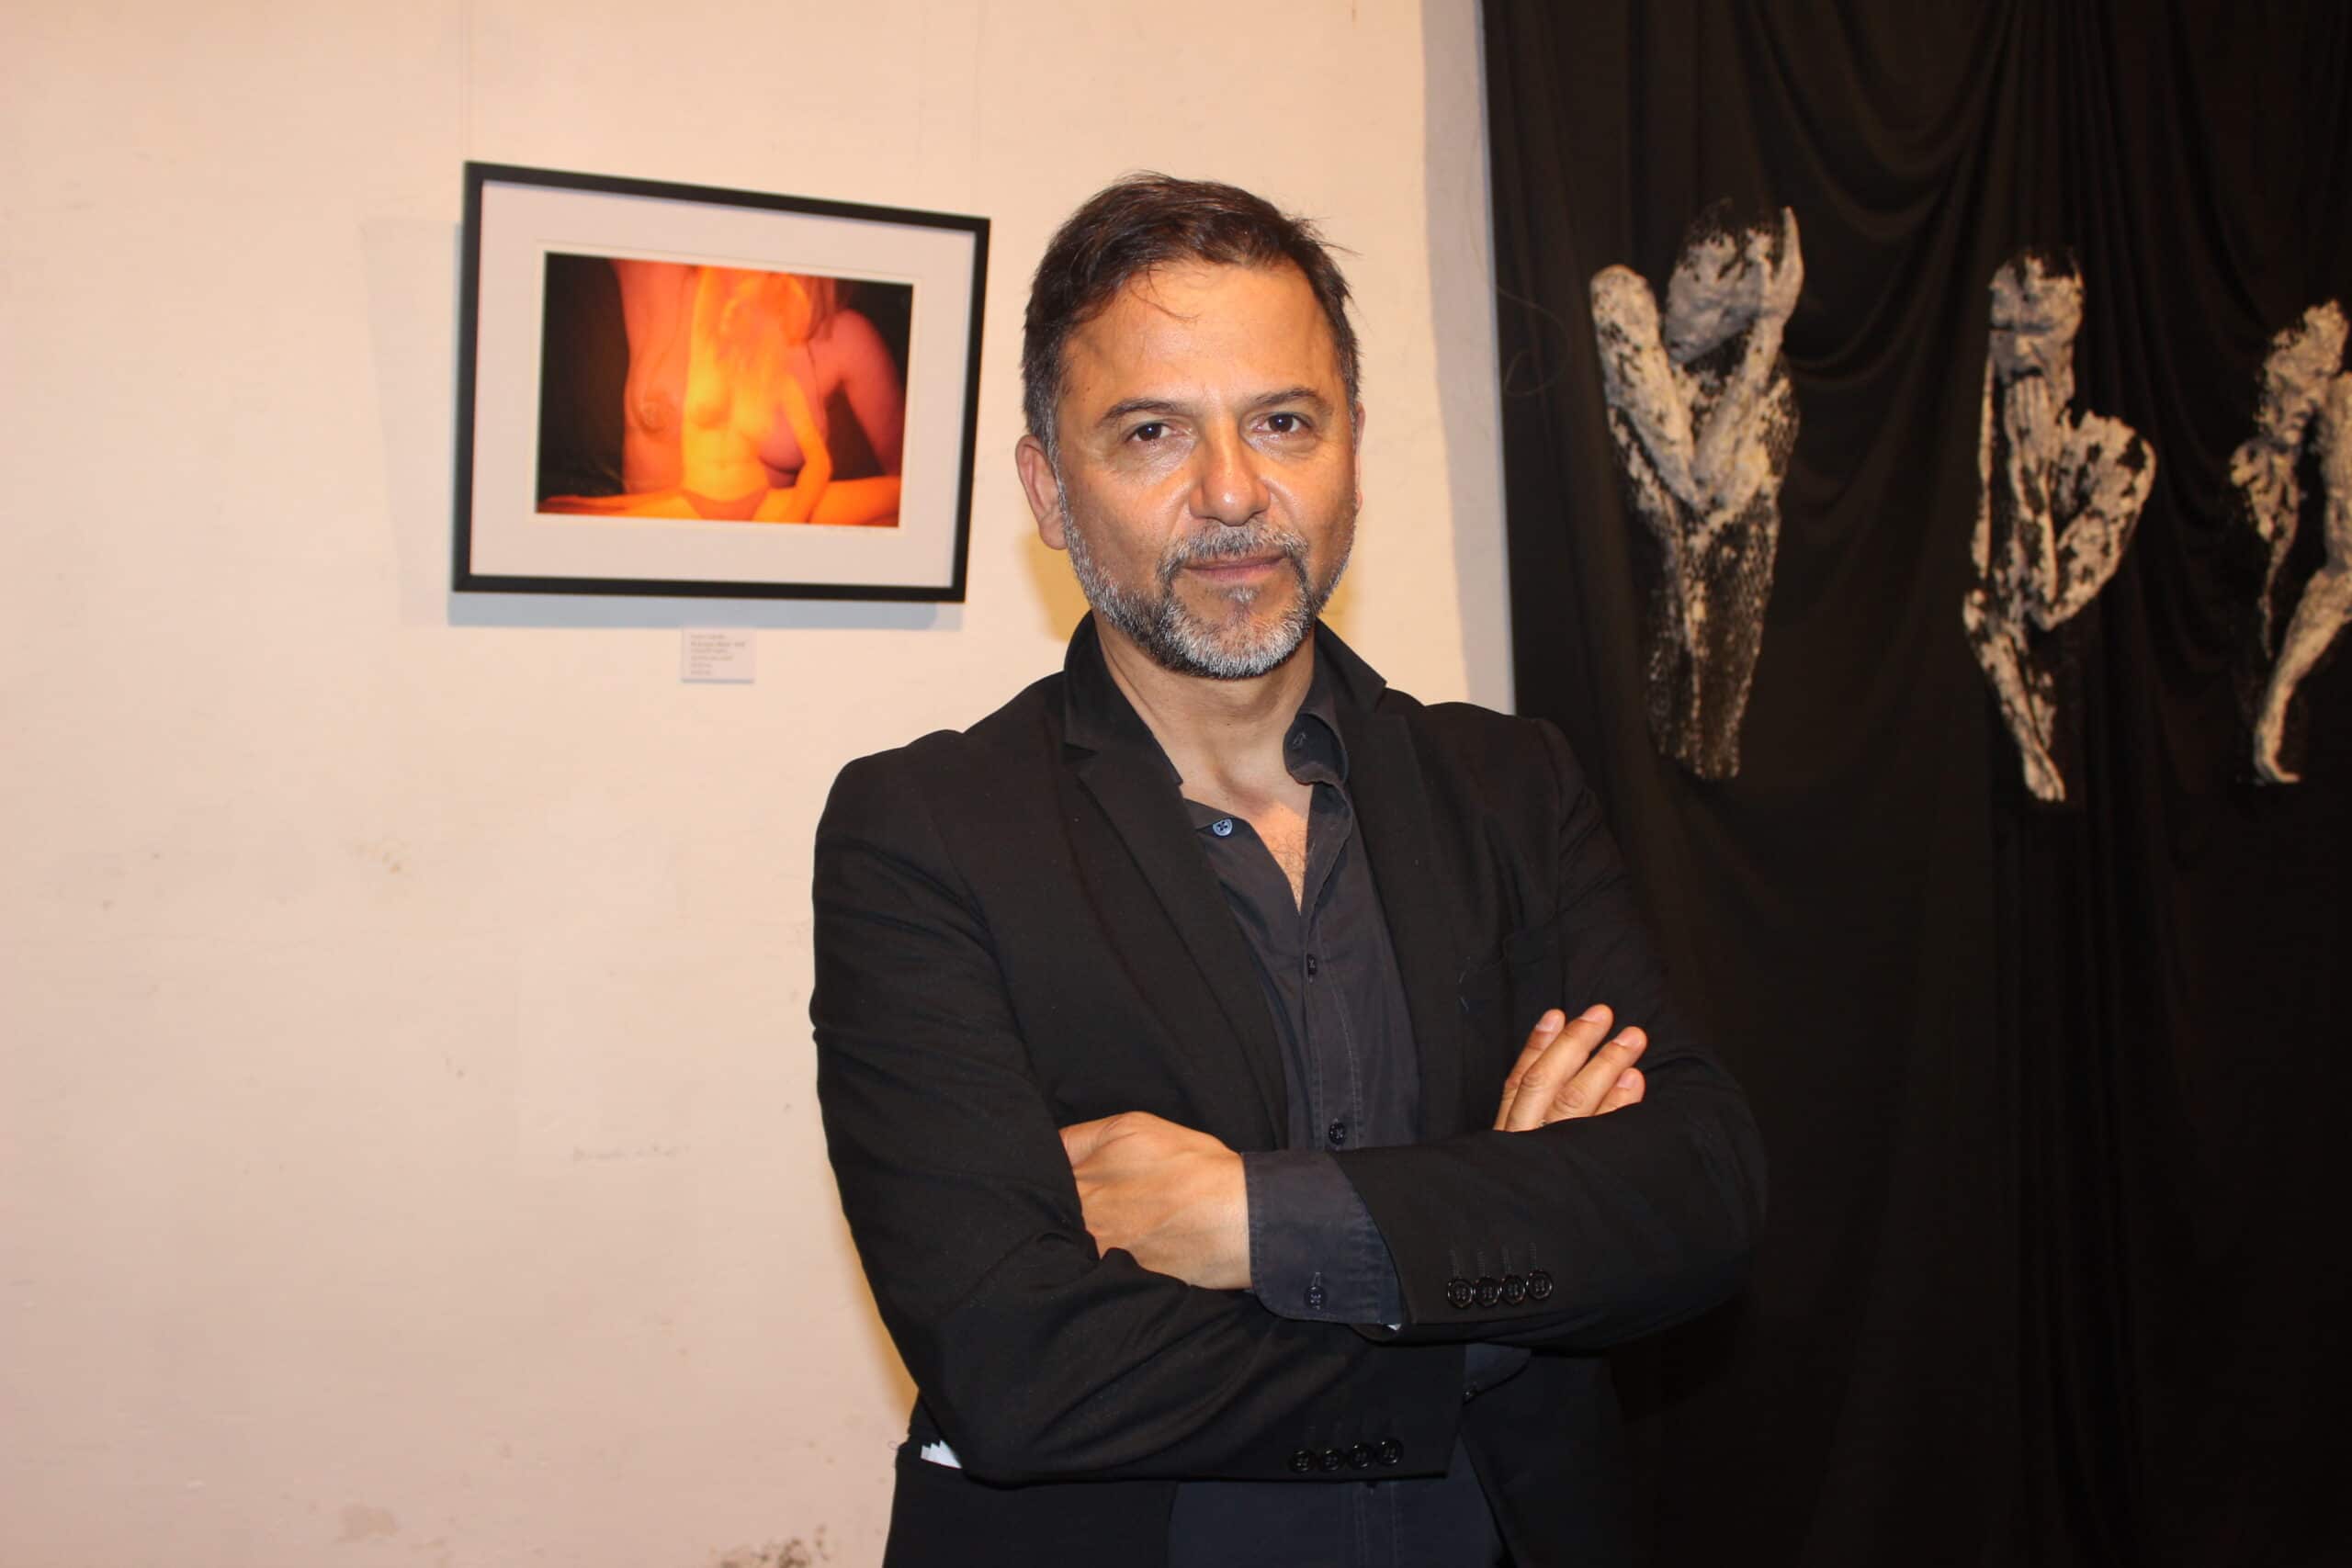 Triunfó en Italia y llega a México documental sobre Caravaggio